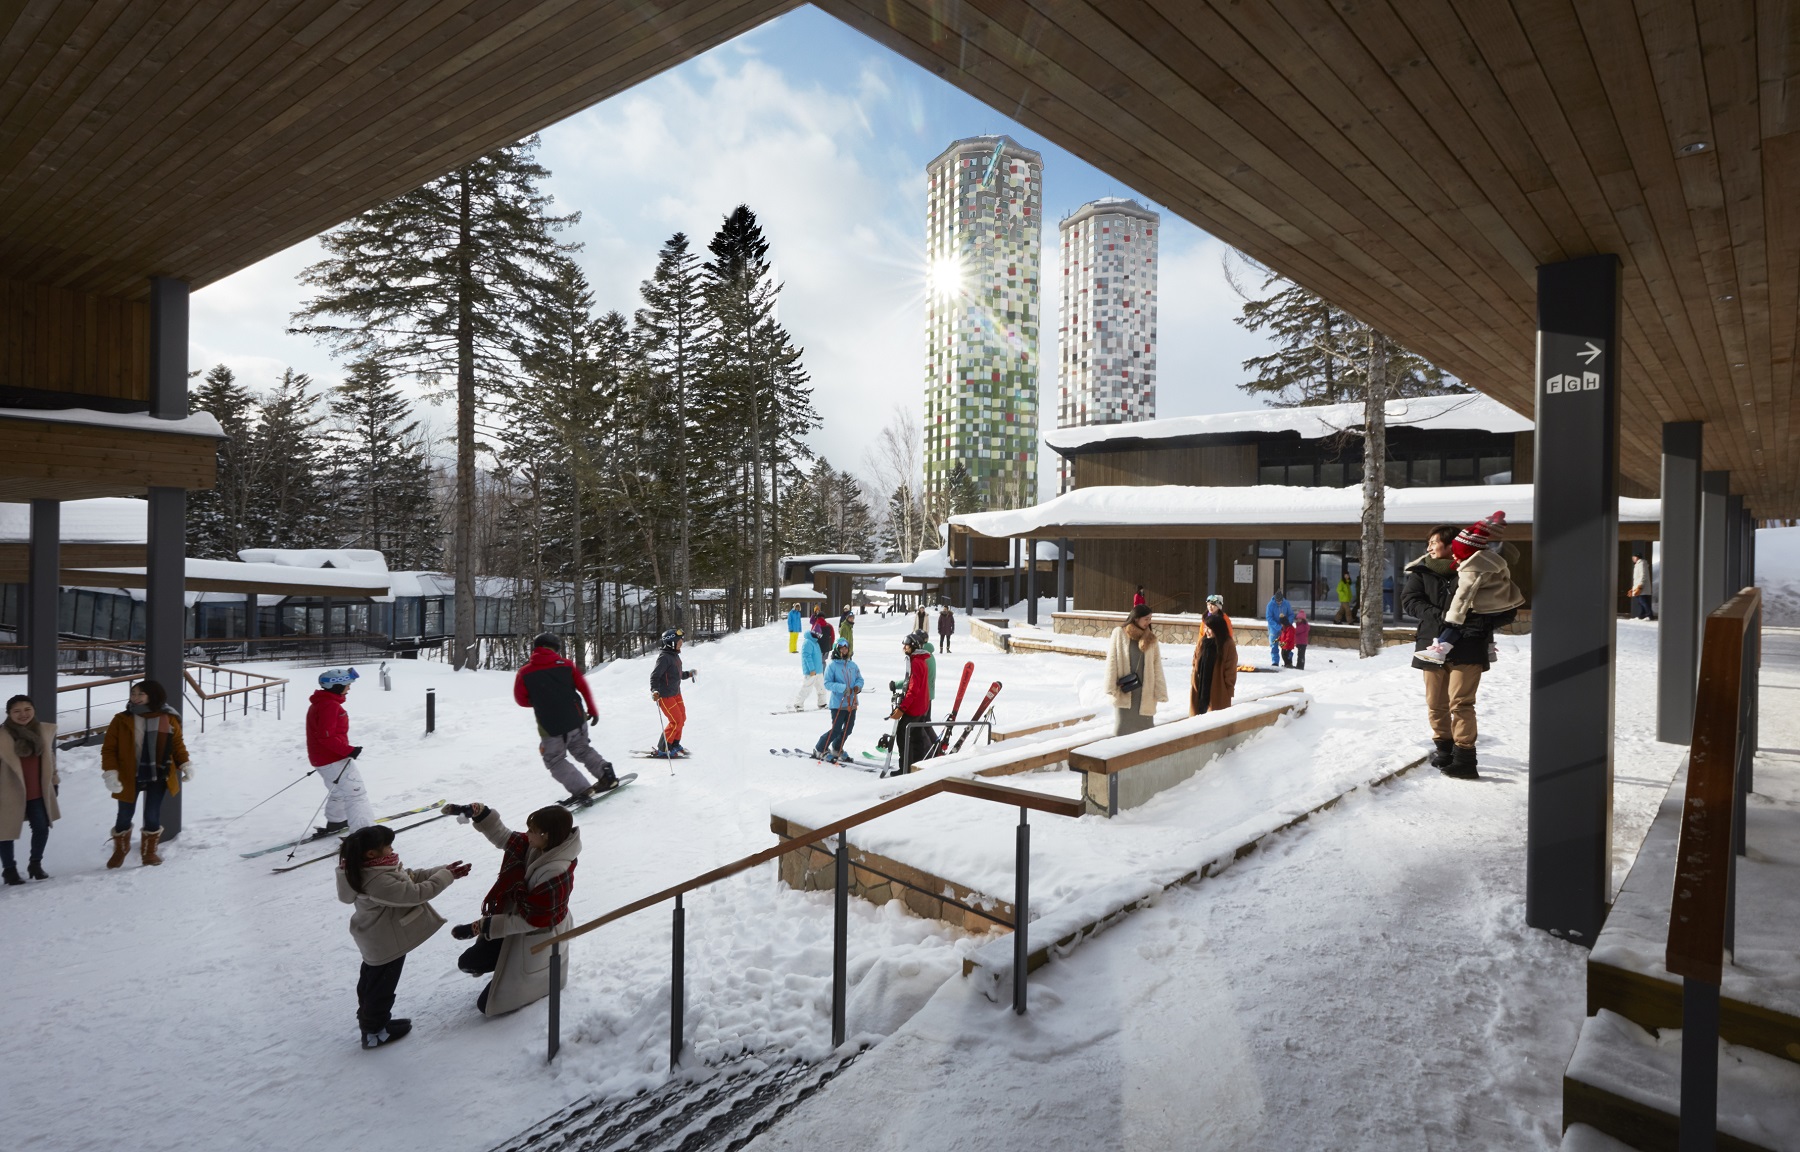 アルツ磐梯・猫魔スキー場2021-22共通シーズン券を10月1日から販売開始 